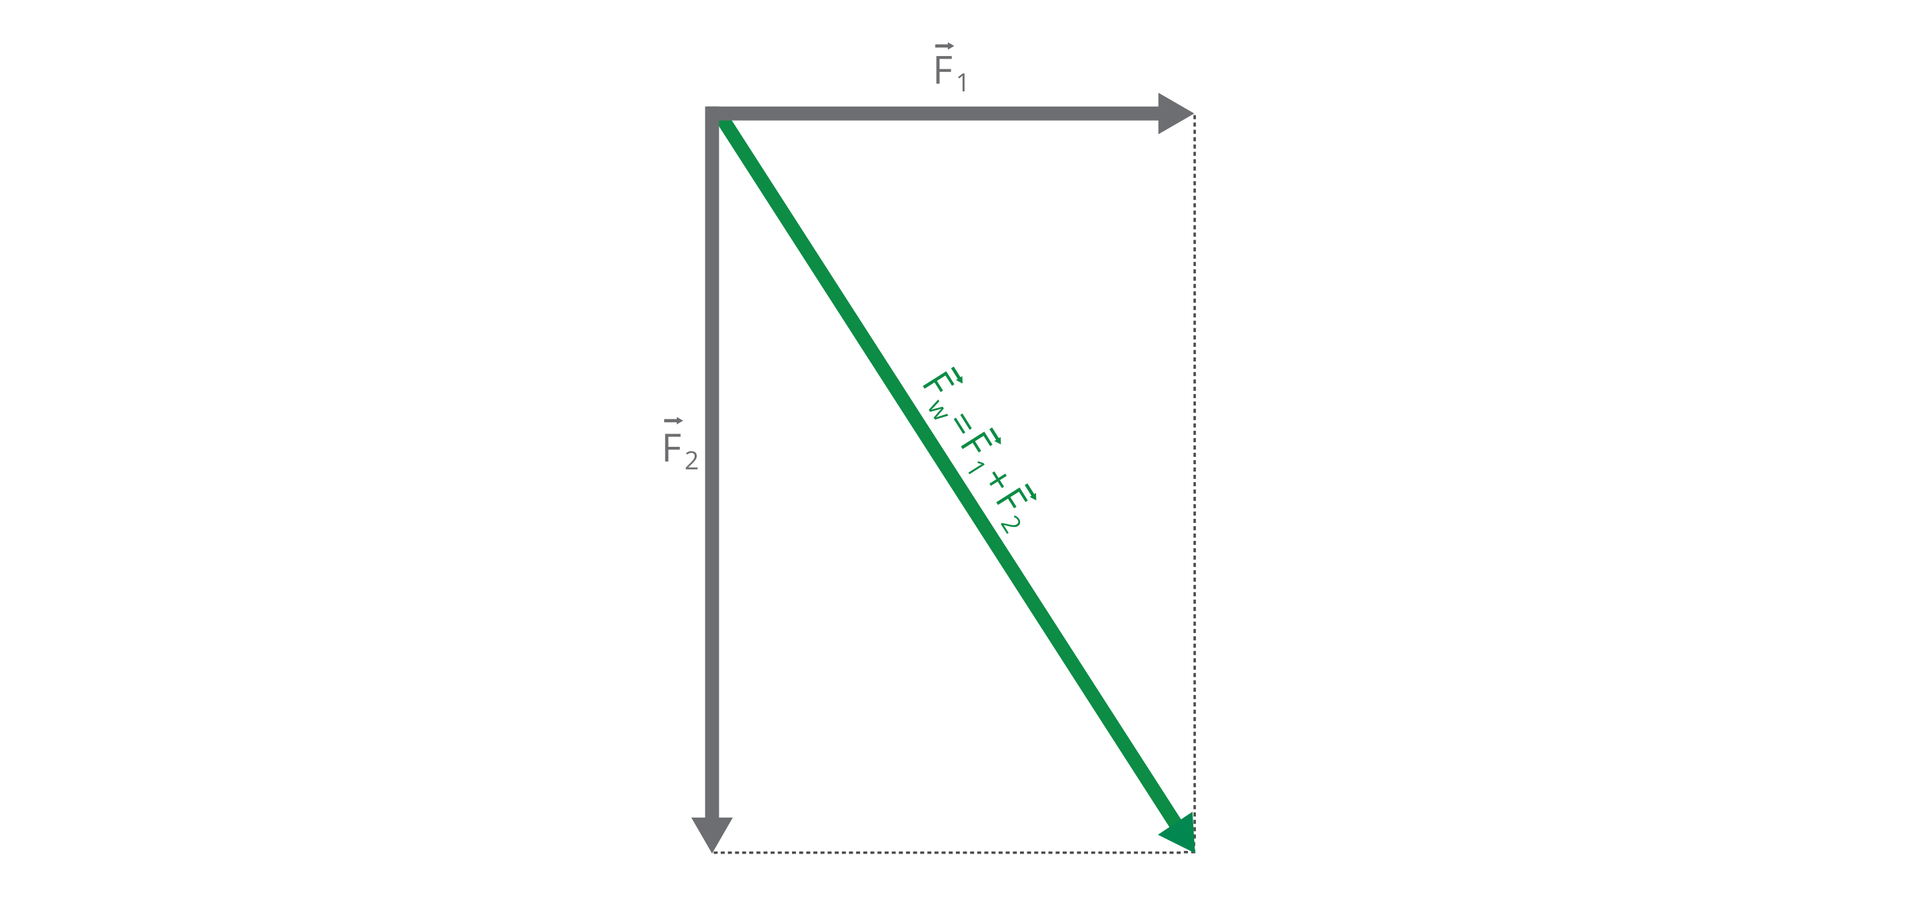 Ilustracja przedstawia schemat dodawania sił metodą równoległoboku. Długościom wektorów odpowiadają długości boków równoległoboku. Długość przekątnej tego równoległoboku odpowiada długości wektora składowego.